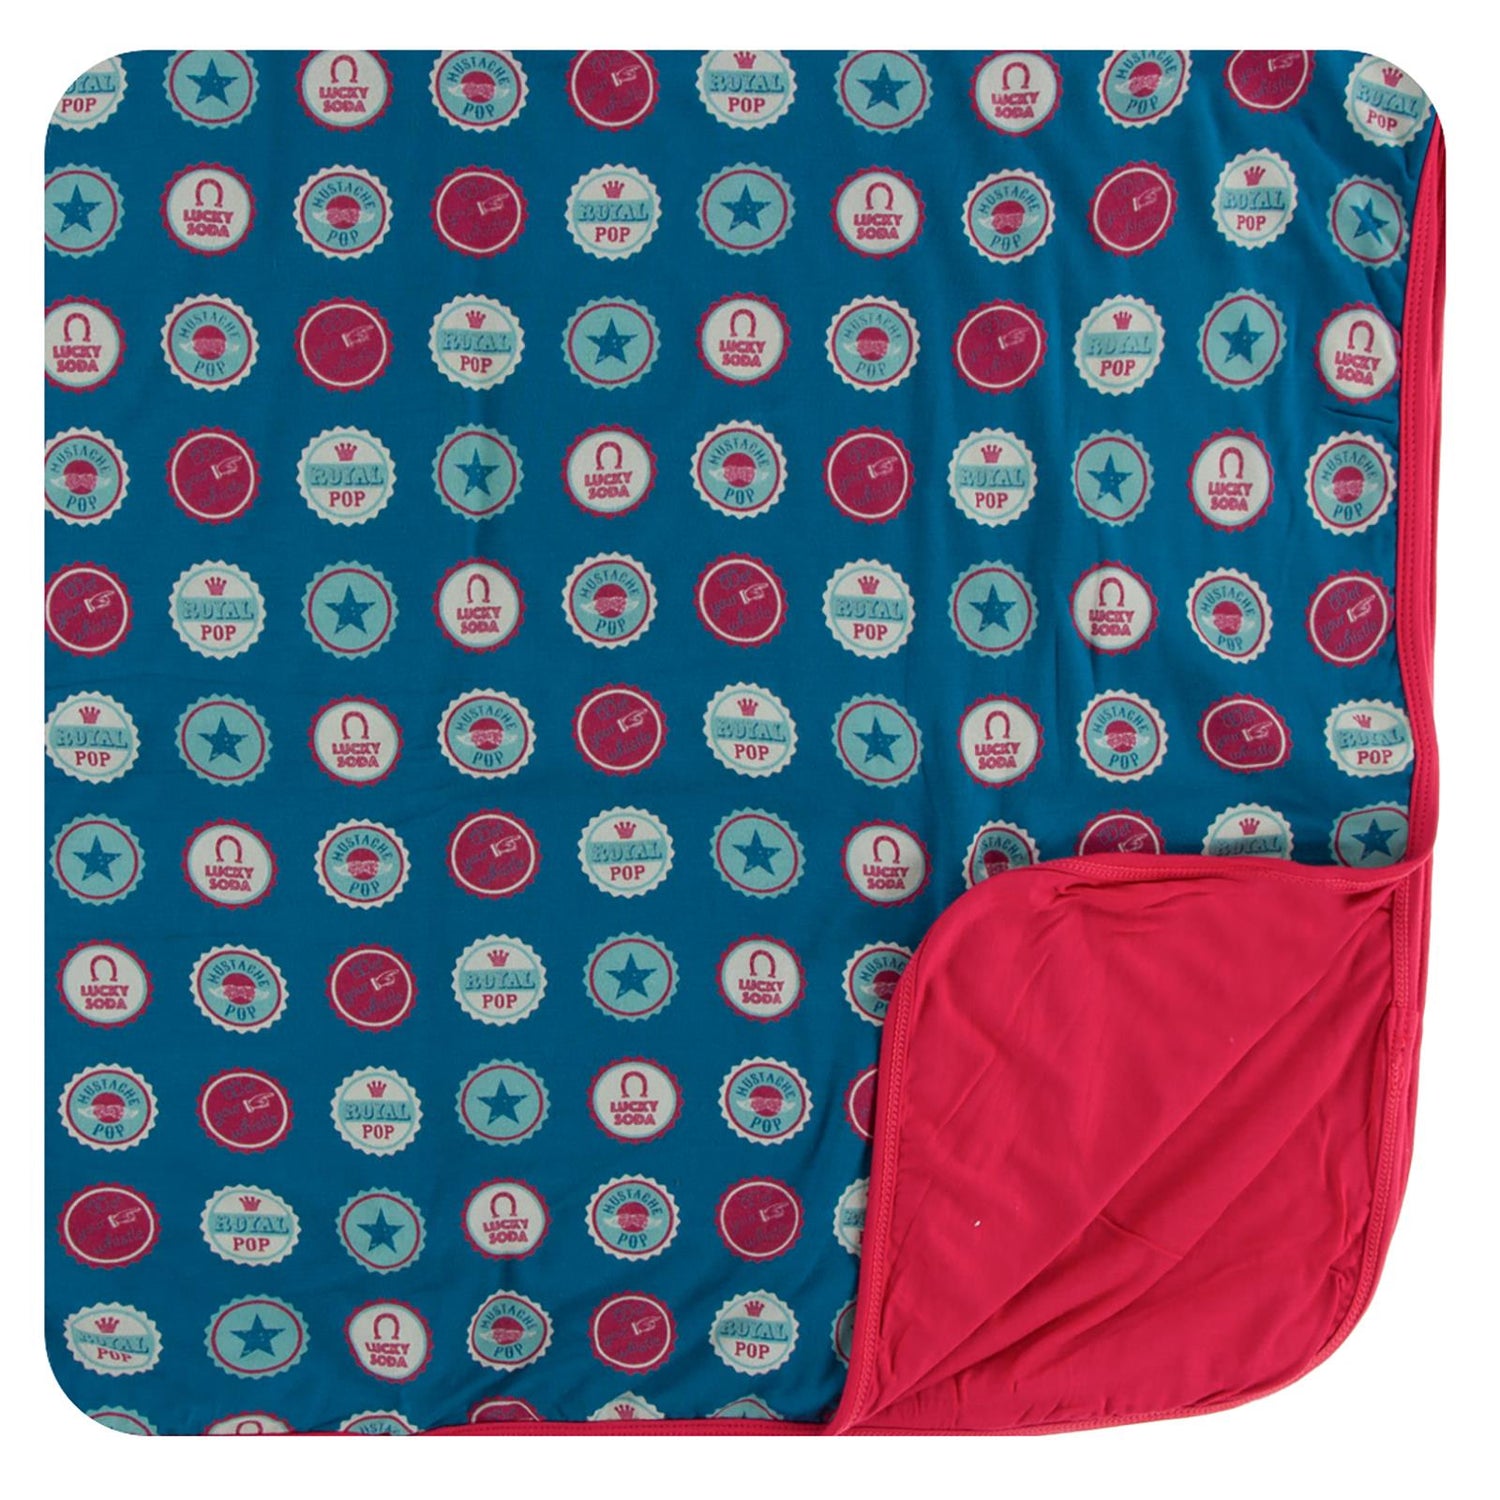 Print Toddler Blanket in Soda Pop Caps